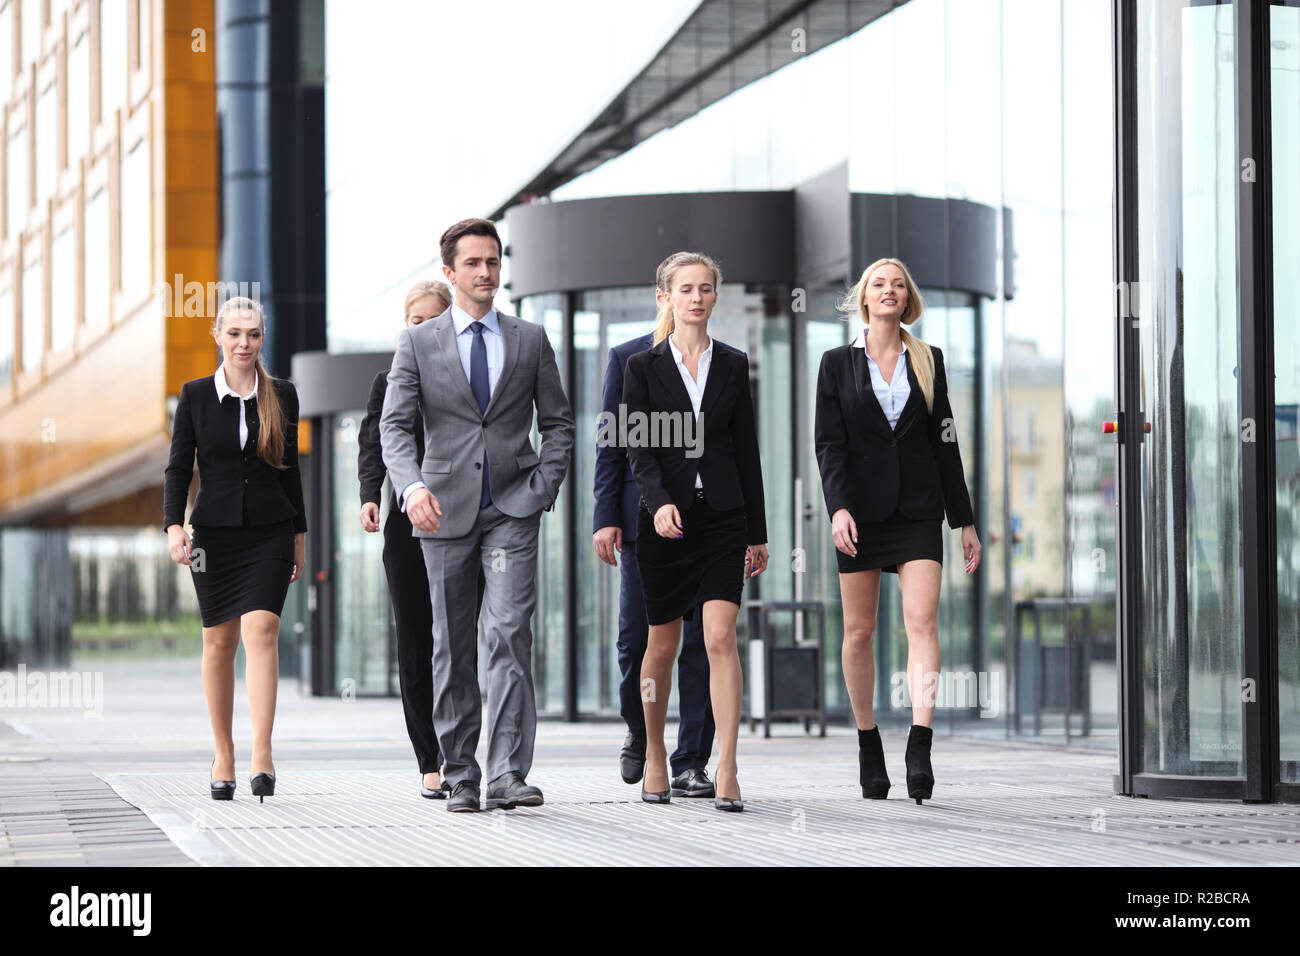 Portrait des erfolgreichen Business People Team zusammen gehen im Freien in der Nähe von modernes Bürogebäude Stockfoto